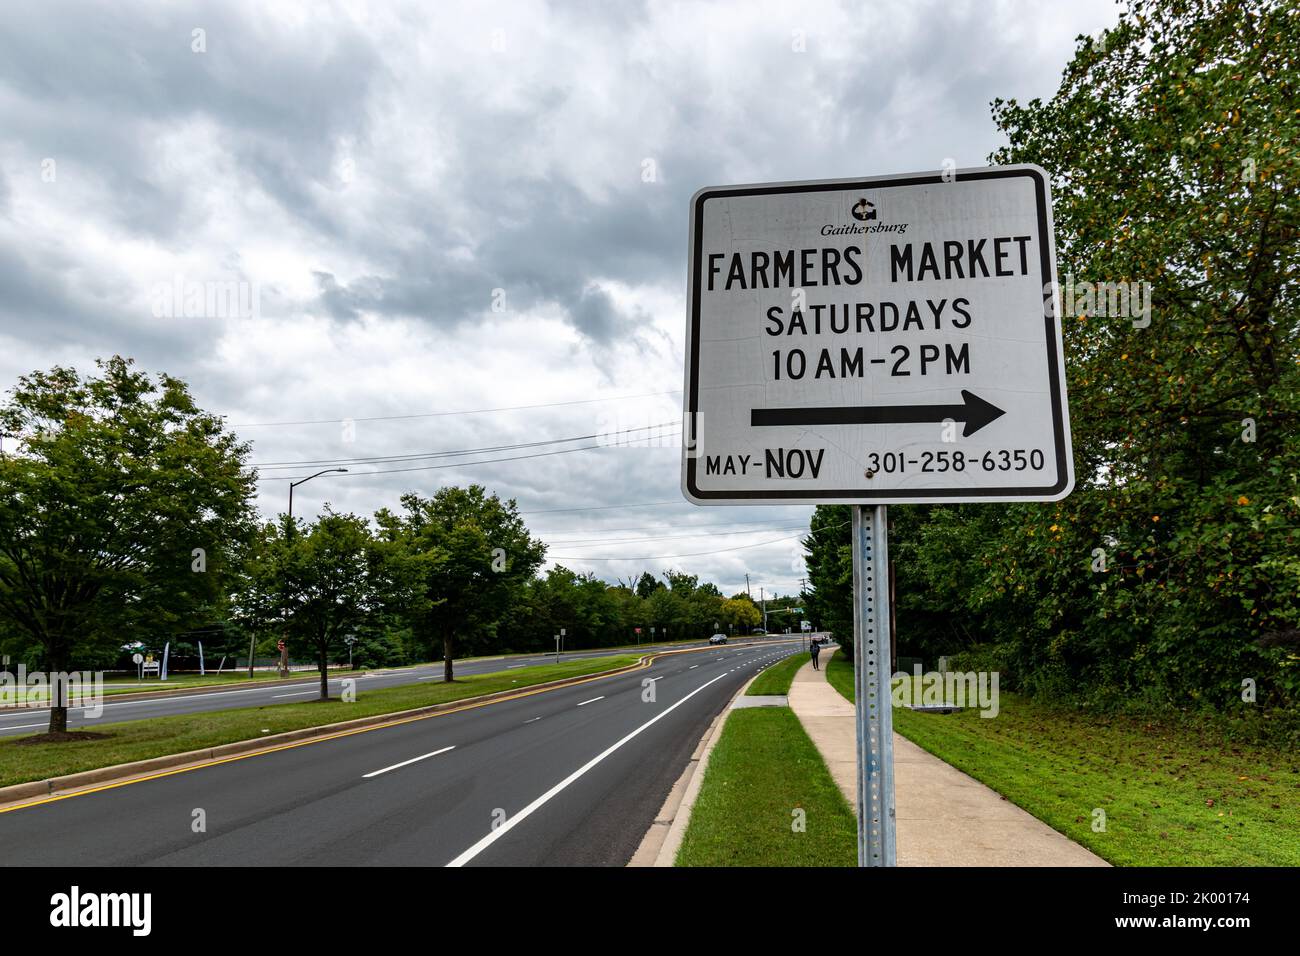 Un panneau informe les passants d'un marché agricole de fin de semaine dans le quartier de Kentland, à Gaithersburg, dans le comté de Montgomery, Maryland. Banque D'Images